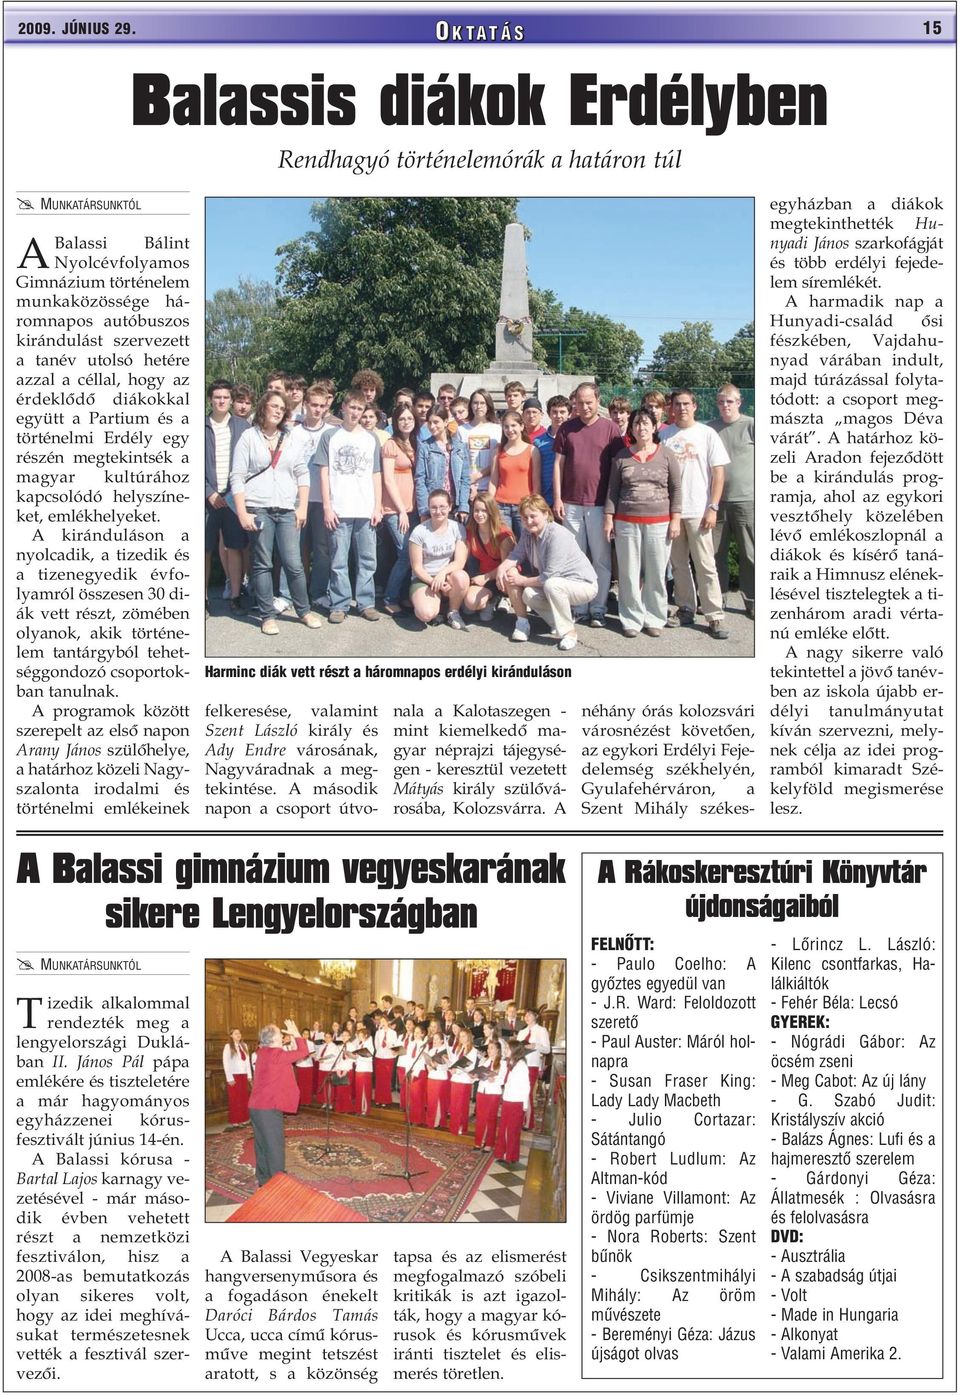 szervezett a tanév utolsó hetére azzal a céllal, hogy az érdeklõdõ diákokkal együtt a Partium és a történelmi Erdély egy részén megtekintsék a magyar kultúrához kapcsolódó helyszíneket, emlékhelyeket.